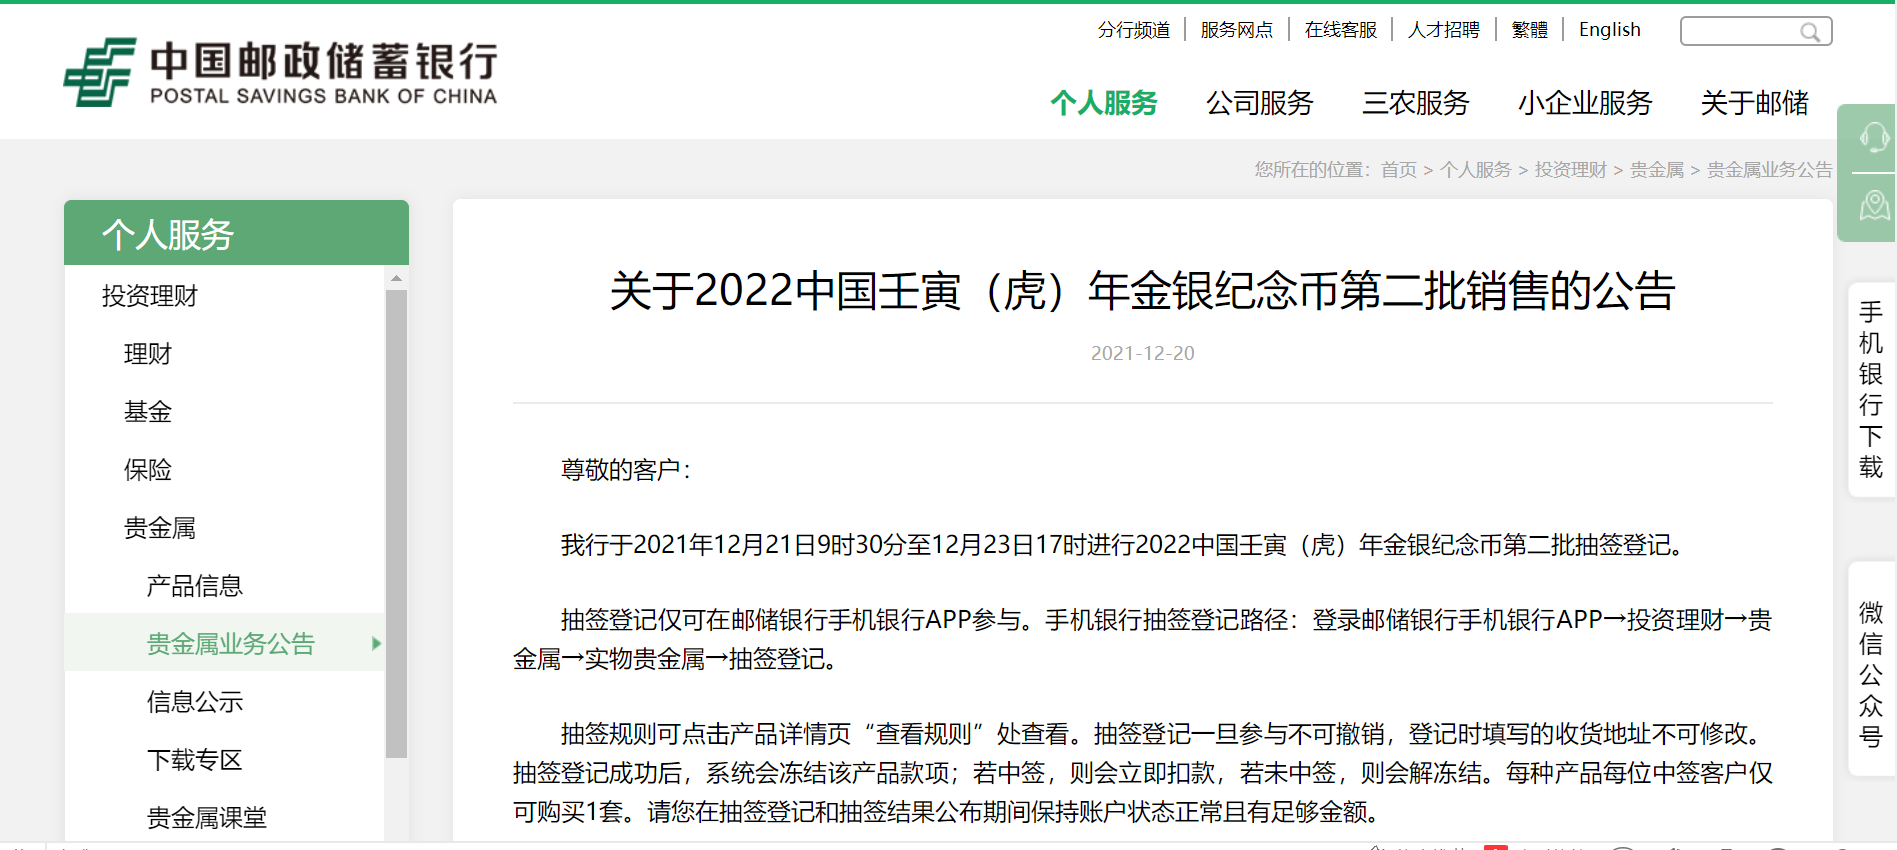 刚刚中国建设银行中国邮政储蓄银行发布最新公告